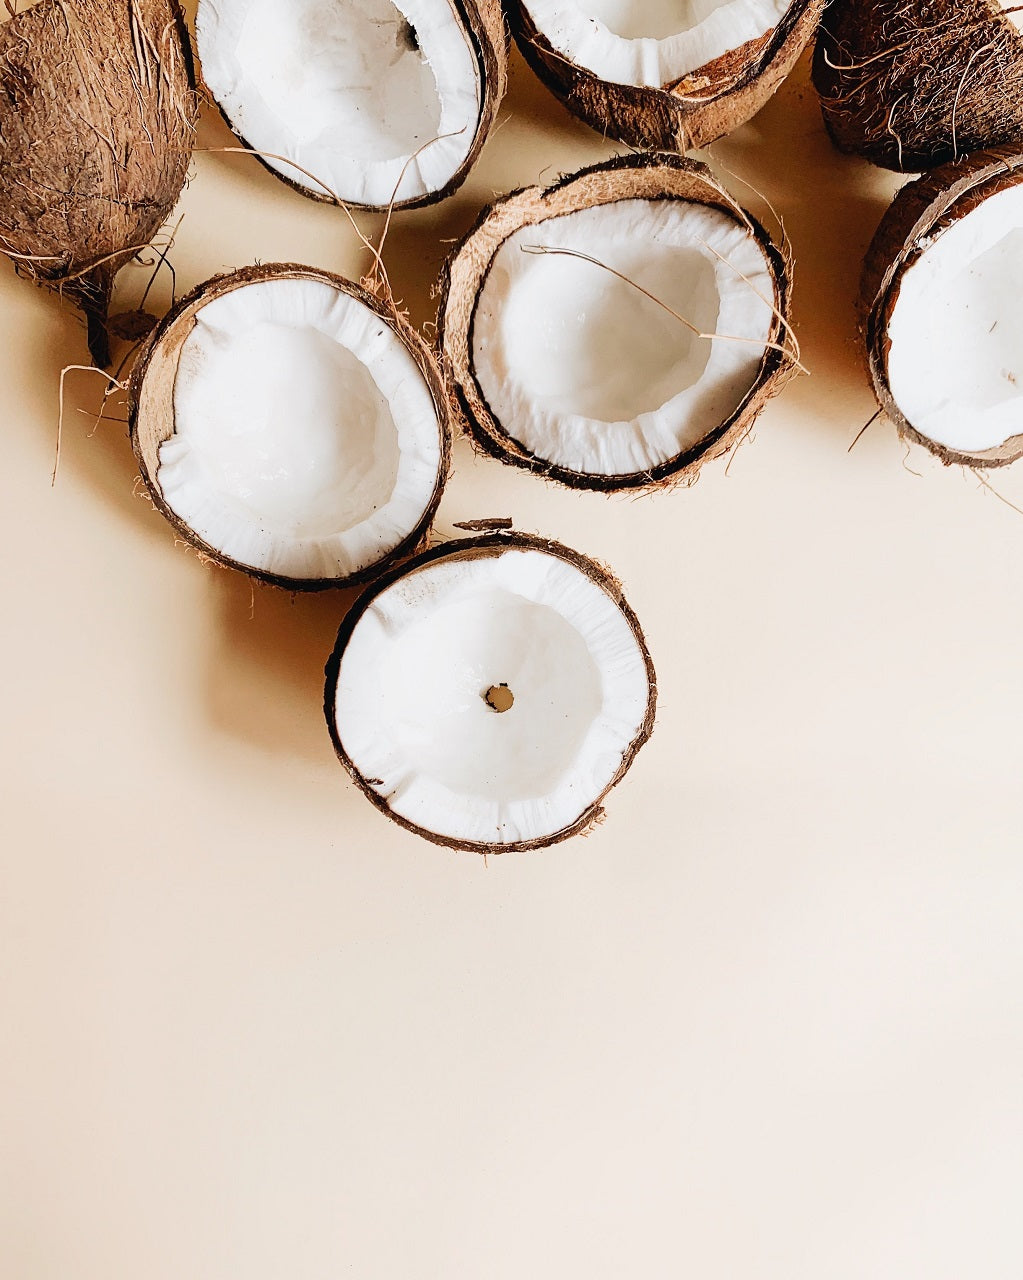 Óleo de coco: o que é e quais os benefícios para a pele